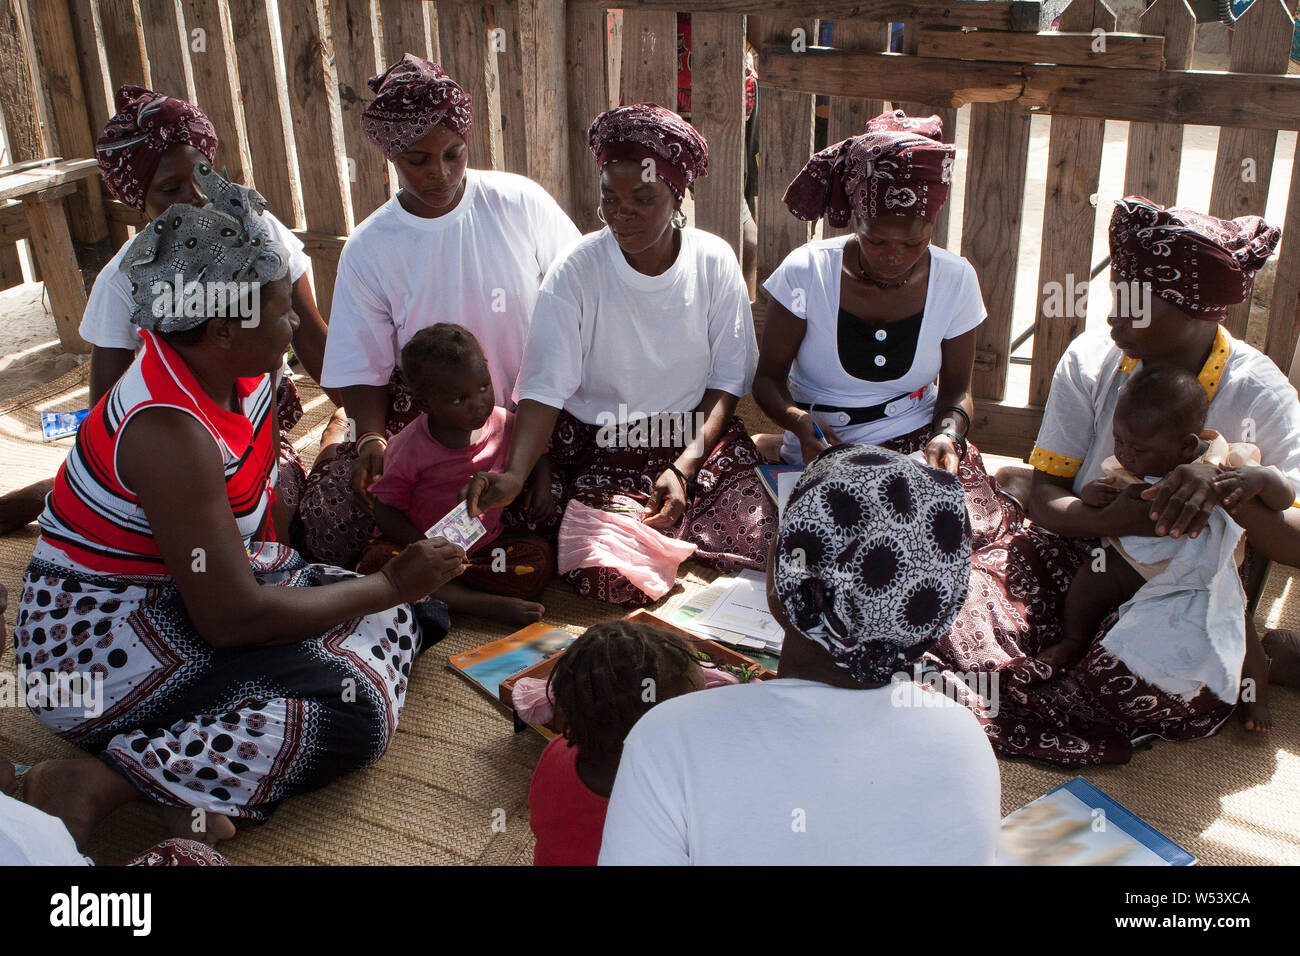 Lokale Kleinstfinanzierungs- und Kreditfazilität im Dorf, unterstützt von der Bergbaugesellschaft.Group, die von Frauen betrieben wird - wegen fehlender Bankgeschäfte in armen ländlichen Gebieten. Stockfoto